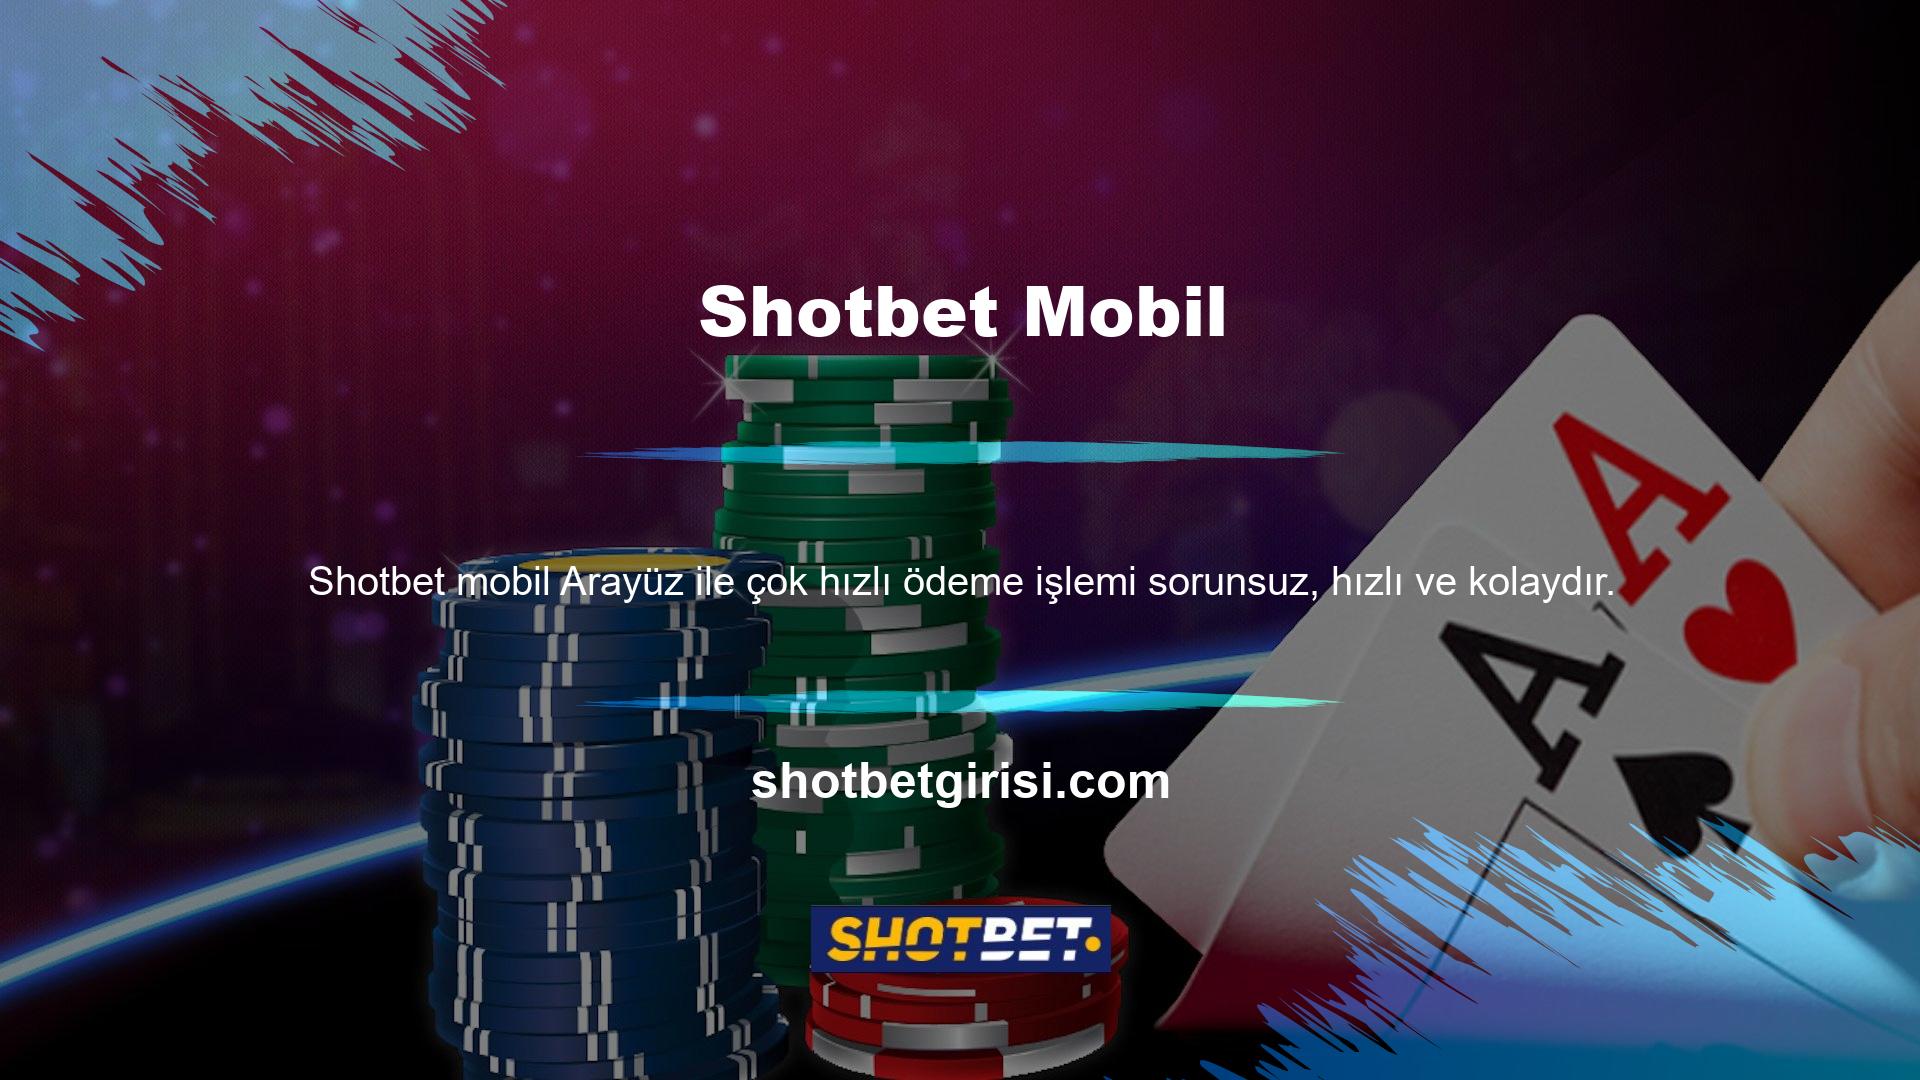 Shotbet mobil arayüzü çok hızlı